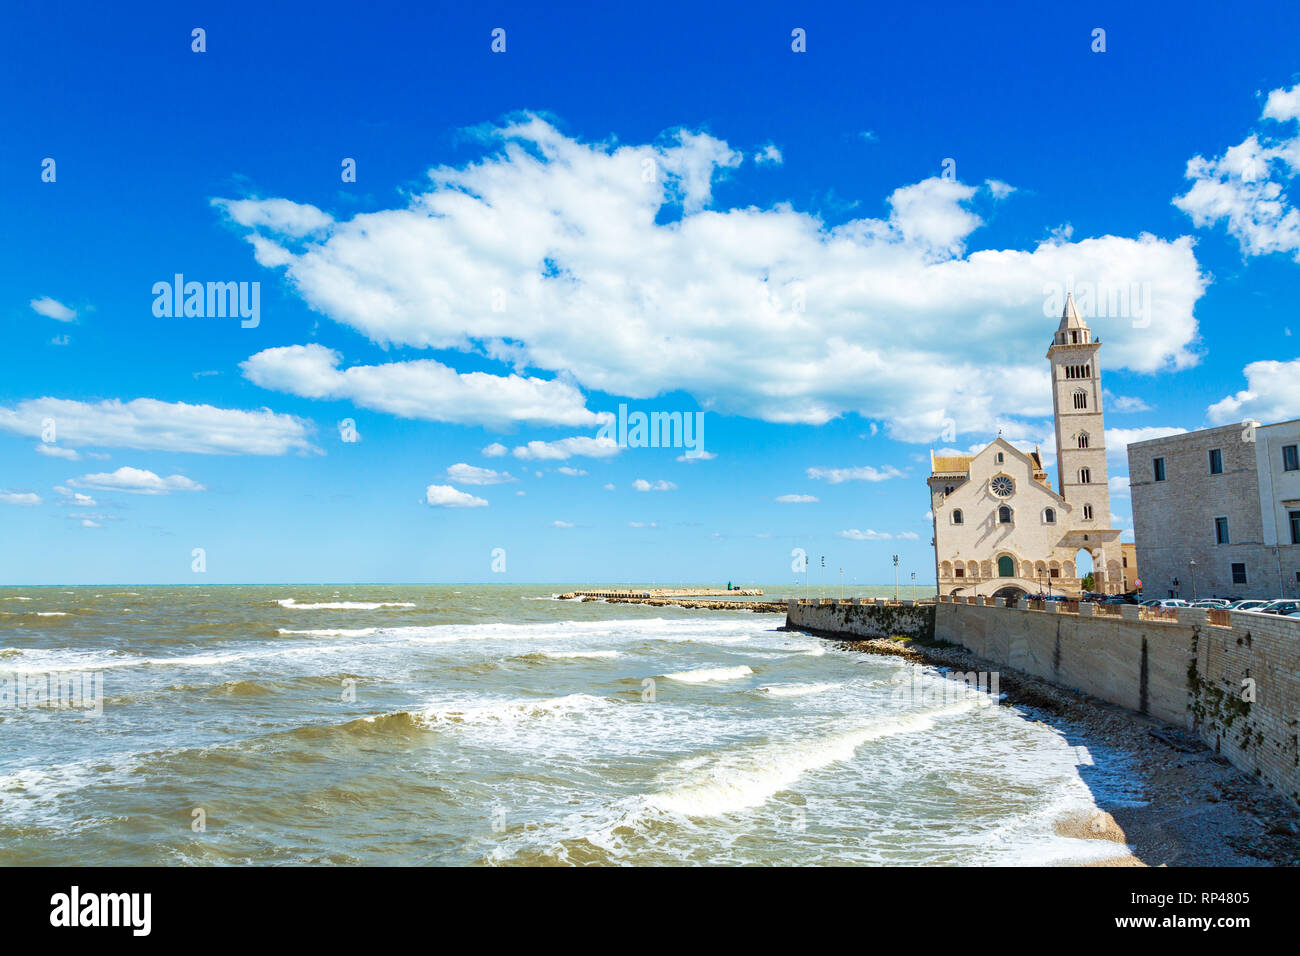 Costa e cattedra nella città di Trani, Provincia Bari, Regione Puglia, Sauthern Italia Foto Stock